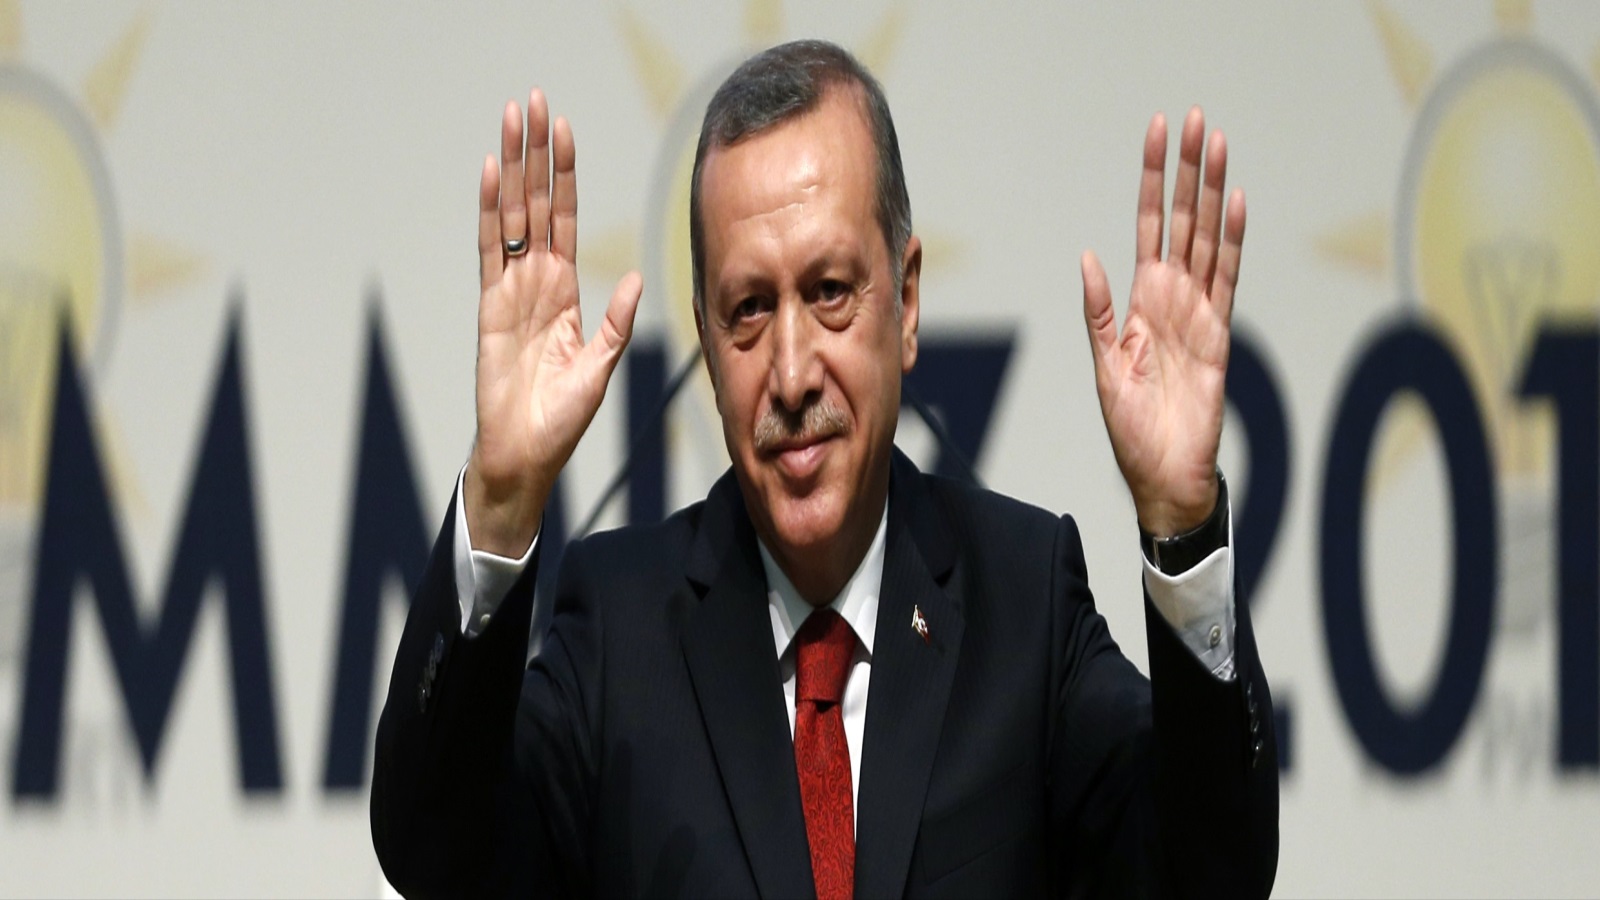 أردوغان كان قد ربح أول ورقة في الاستفتاء الأخير ليحول وفي سنوات قليلة تركيا من دولة وظيفية تخدم أجندات الغرب إلى دولة تبحث على مصالحها